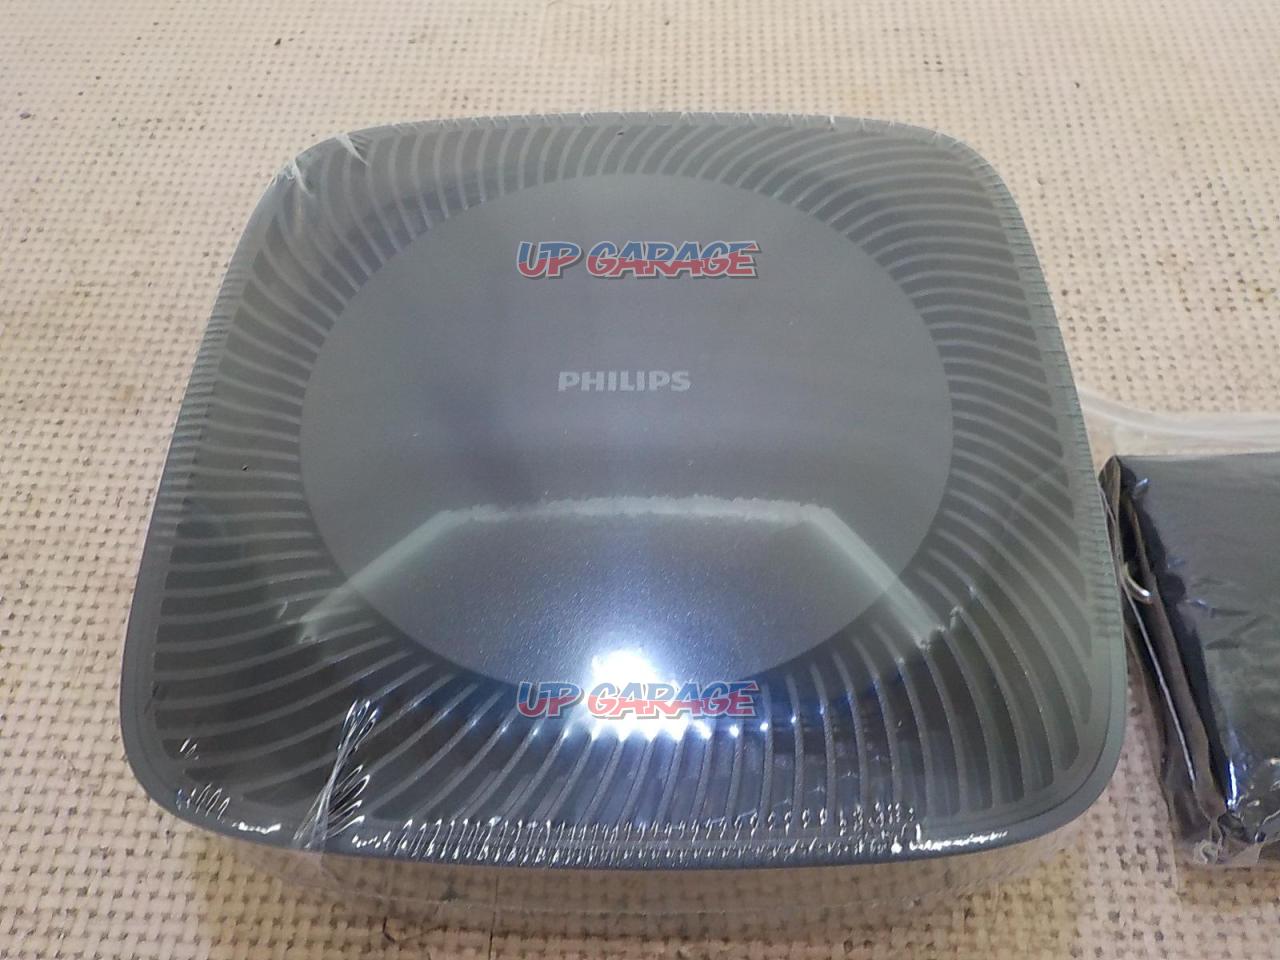 PHILIPS(フィリップス) 高機能自動車用空気清浄機 Go Pure(ゴーピュア) 51008 - 4